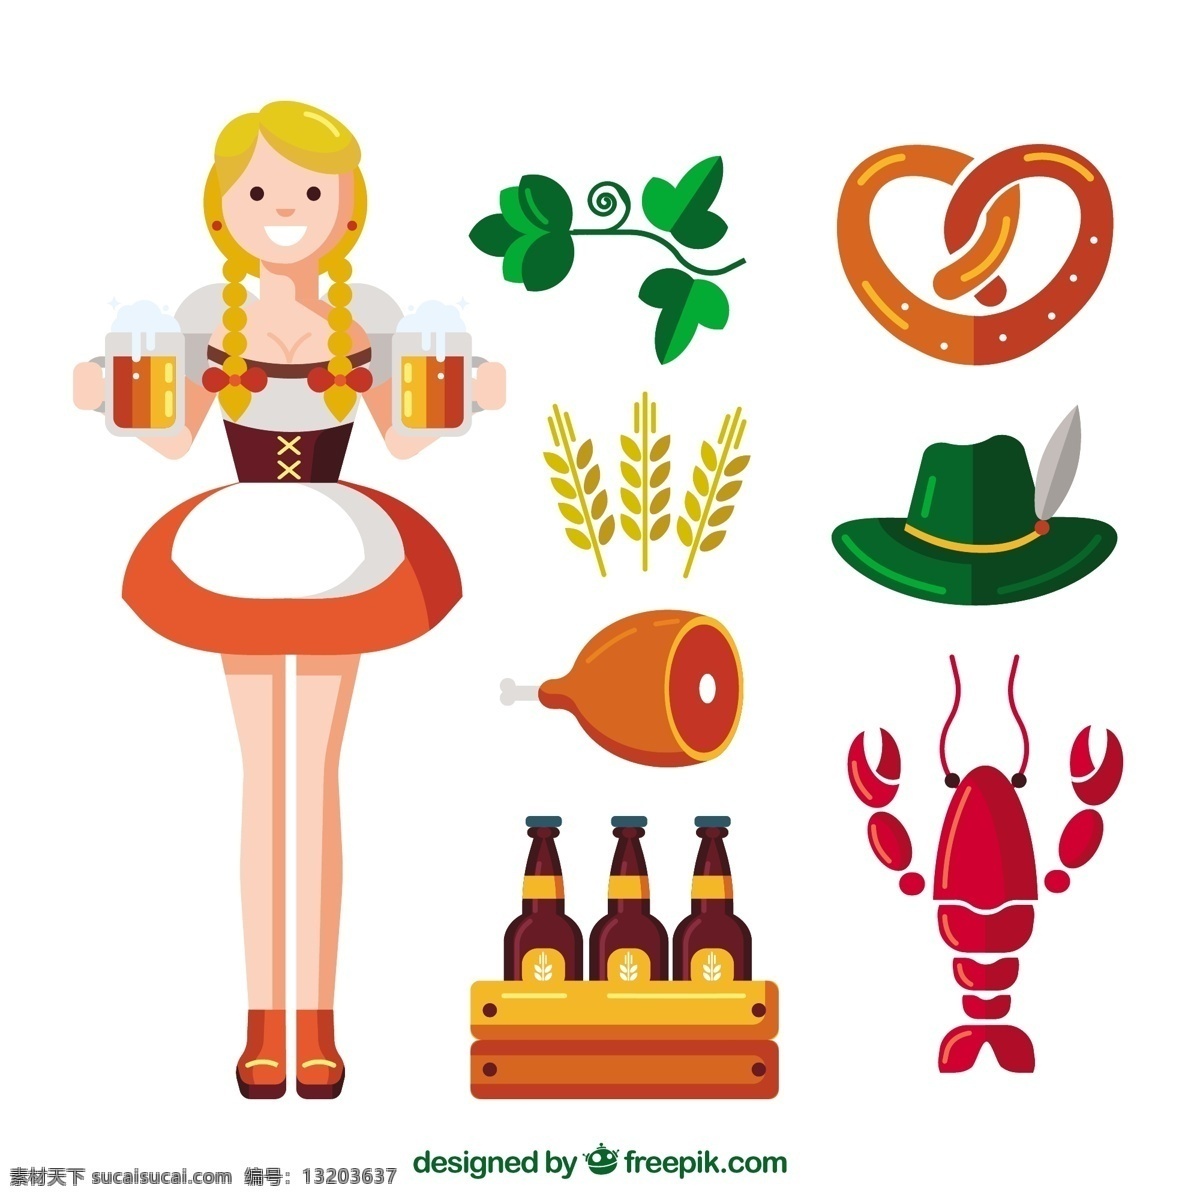 德国 元素 女性 多样性 派对 啤酒 秋天 树叶 微笑 庆祝 快乐 多彩 节日 瓶子 平板 酒吧 小麦 玻璃 饮料 帽子 服饰 平面设计